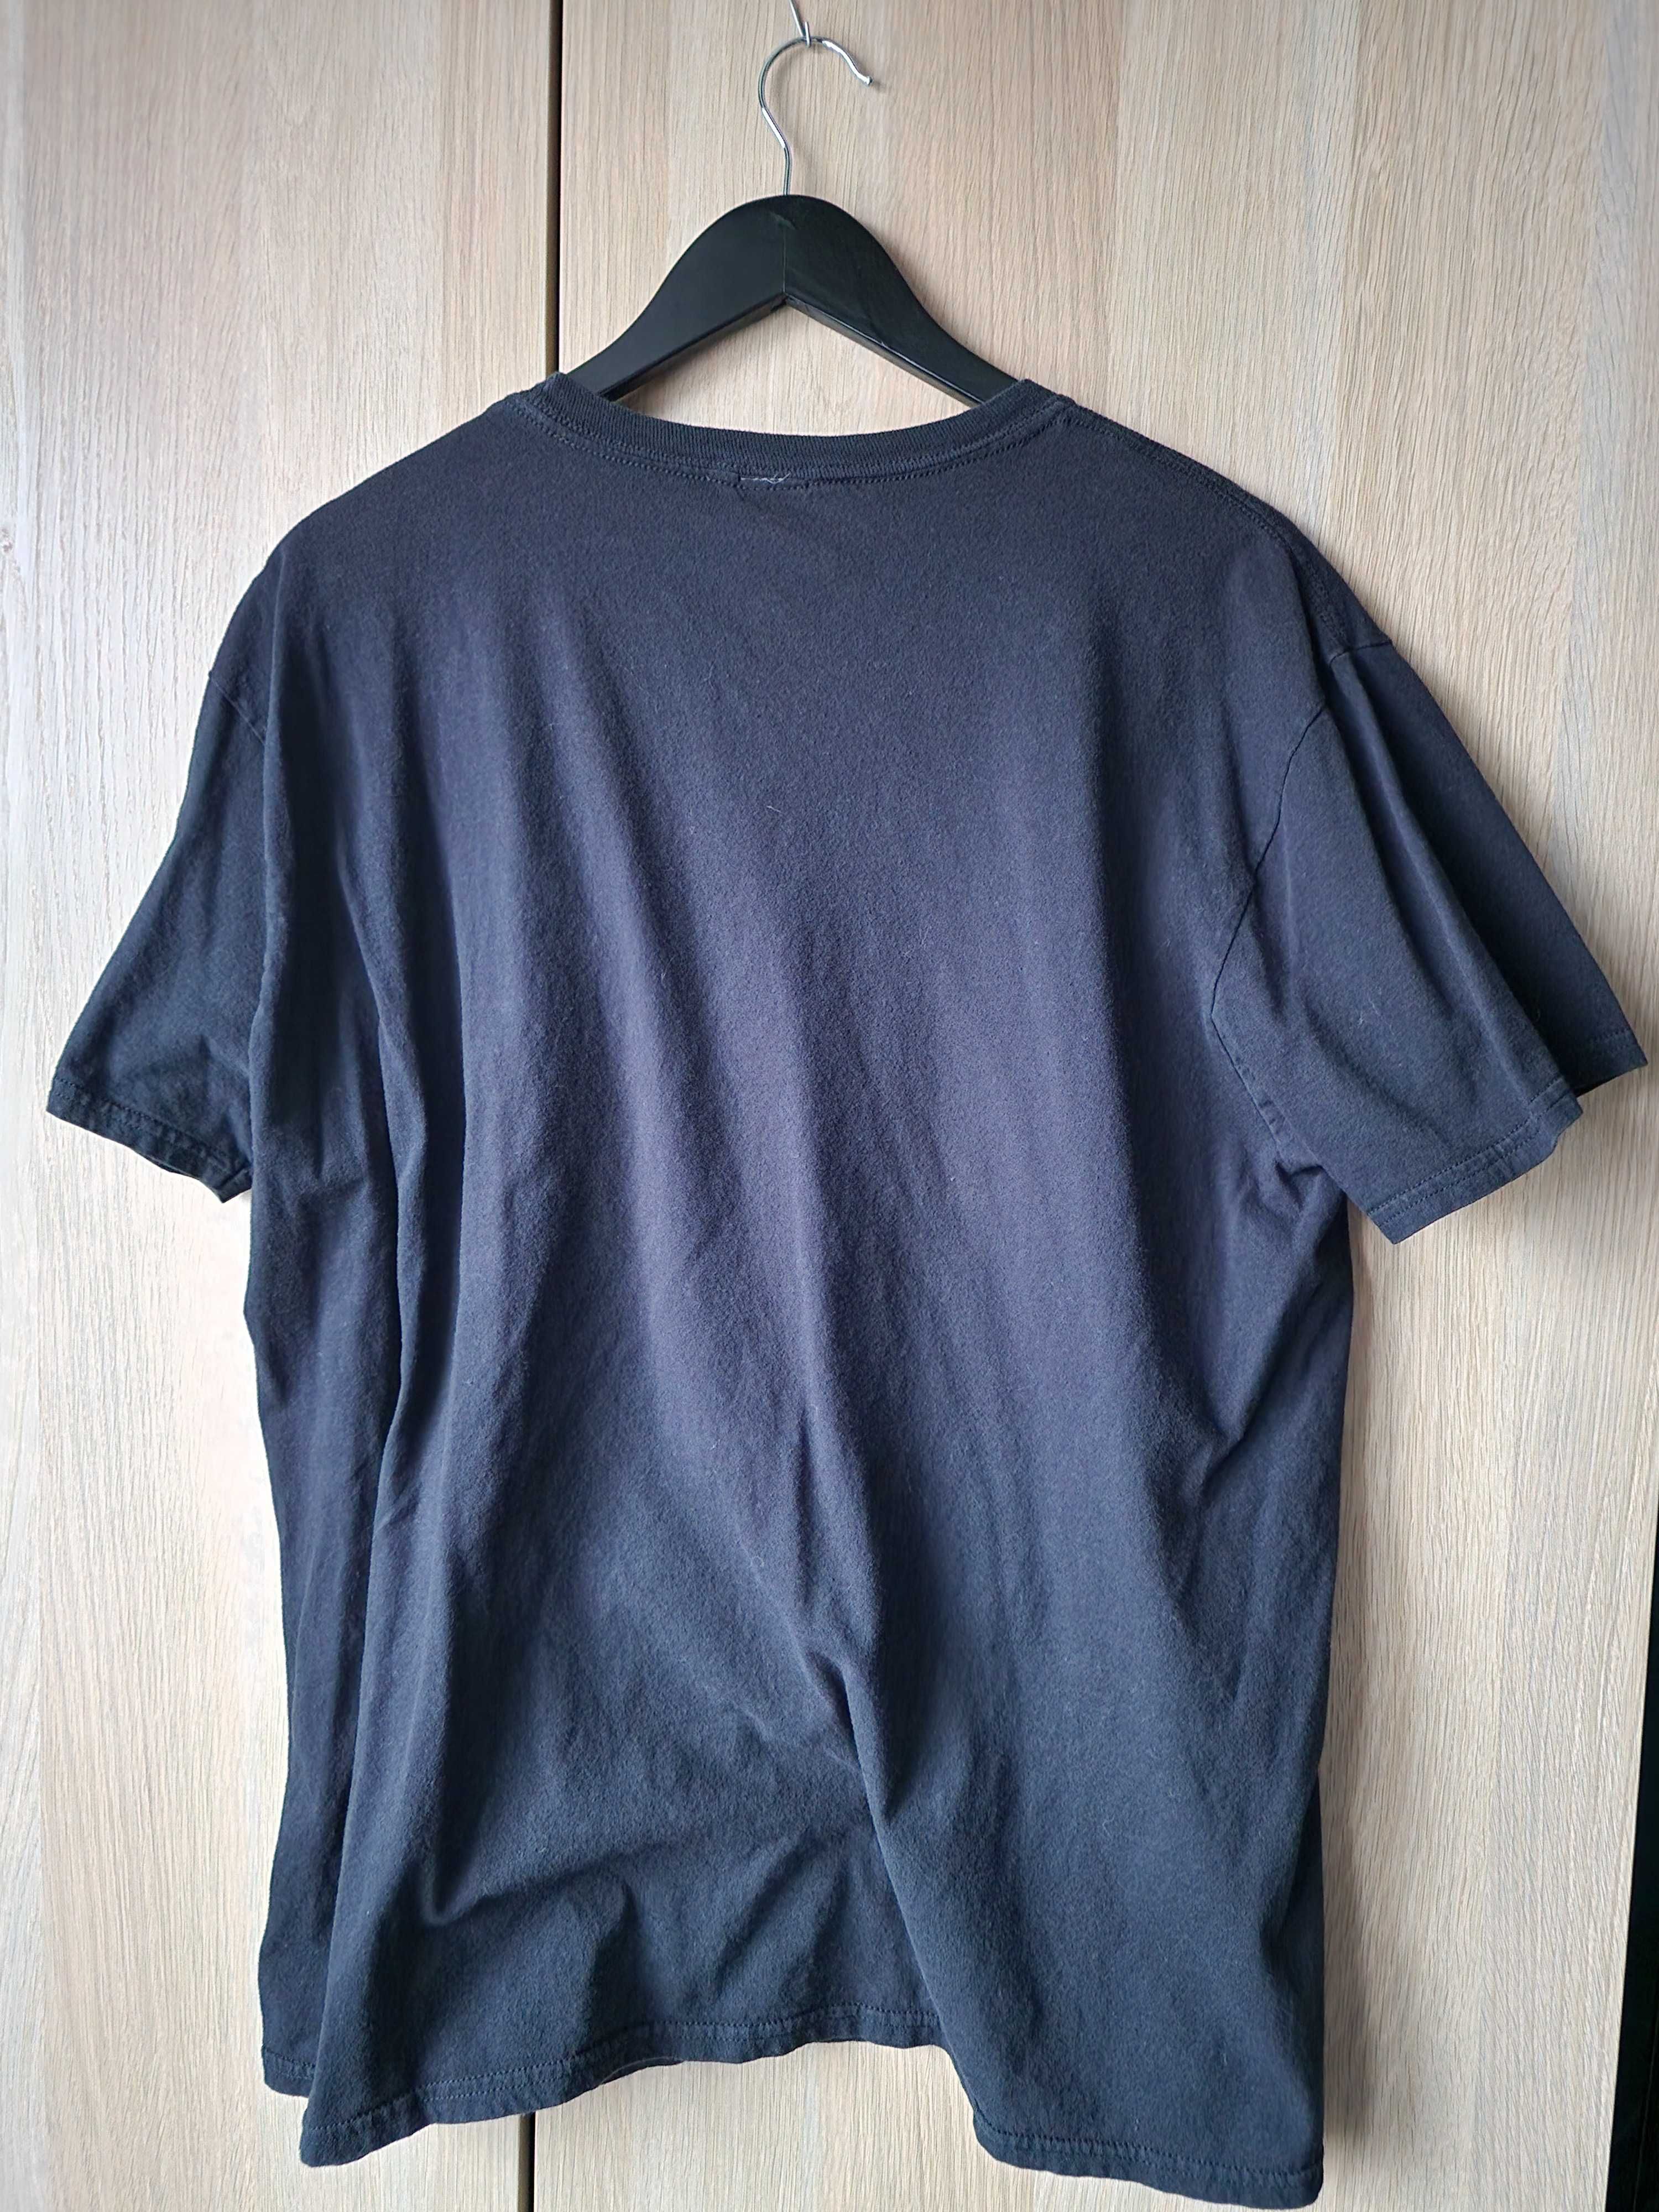 Koszulka męska Teepublic z łosiem, rozmiar XL